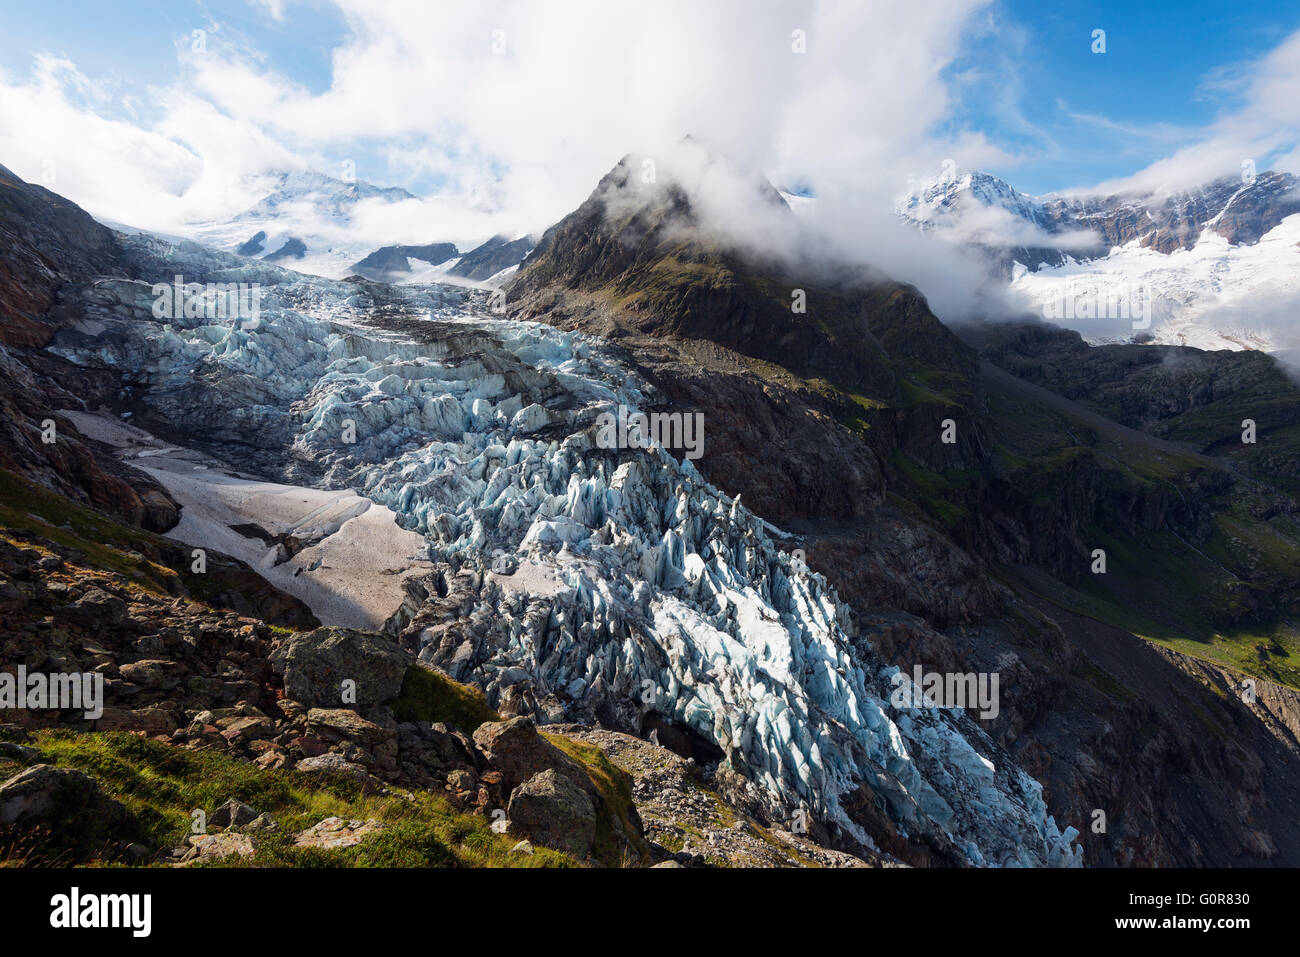 Europe, Switzerland, Bernese Oberland, Interlaken, Gletscher galcier above Grindelwald Stock Photo